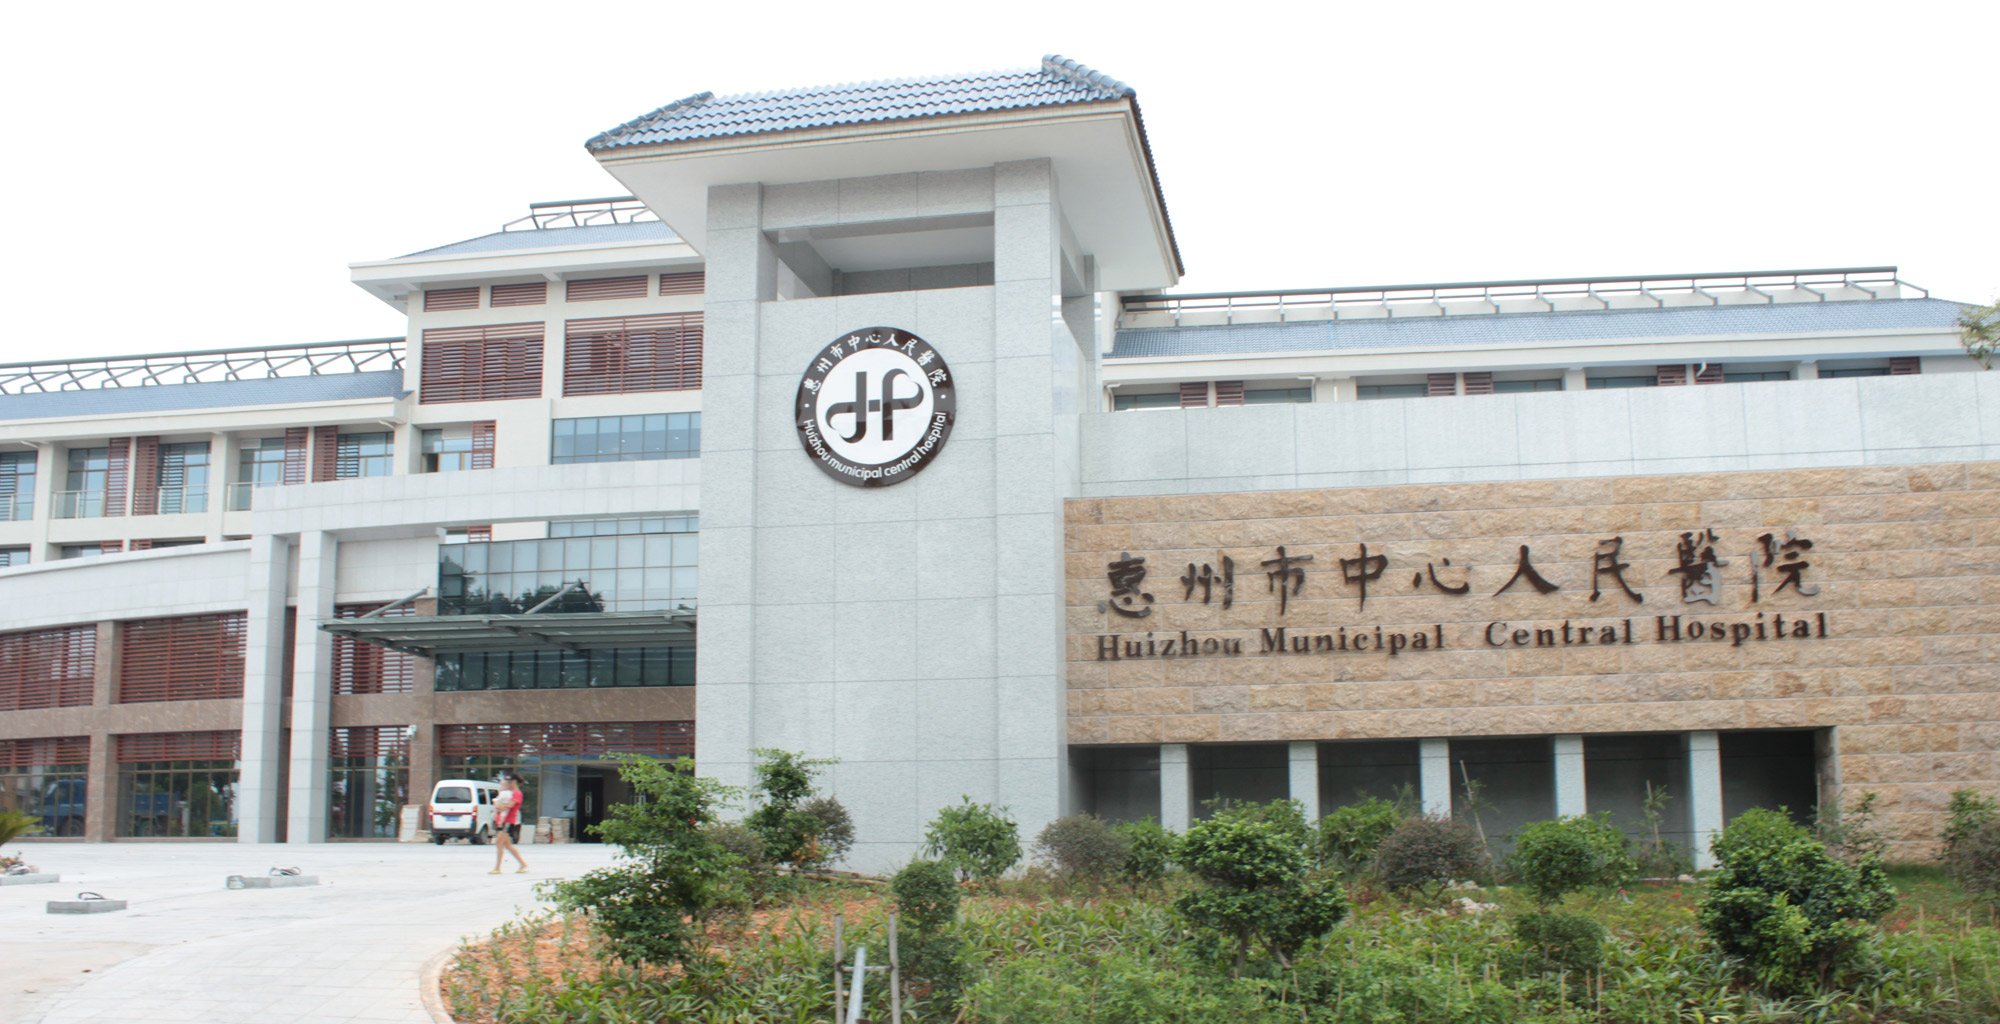 【行摄惠州】探访惠州中心医院新建将开业